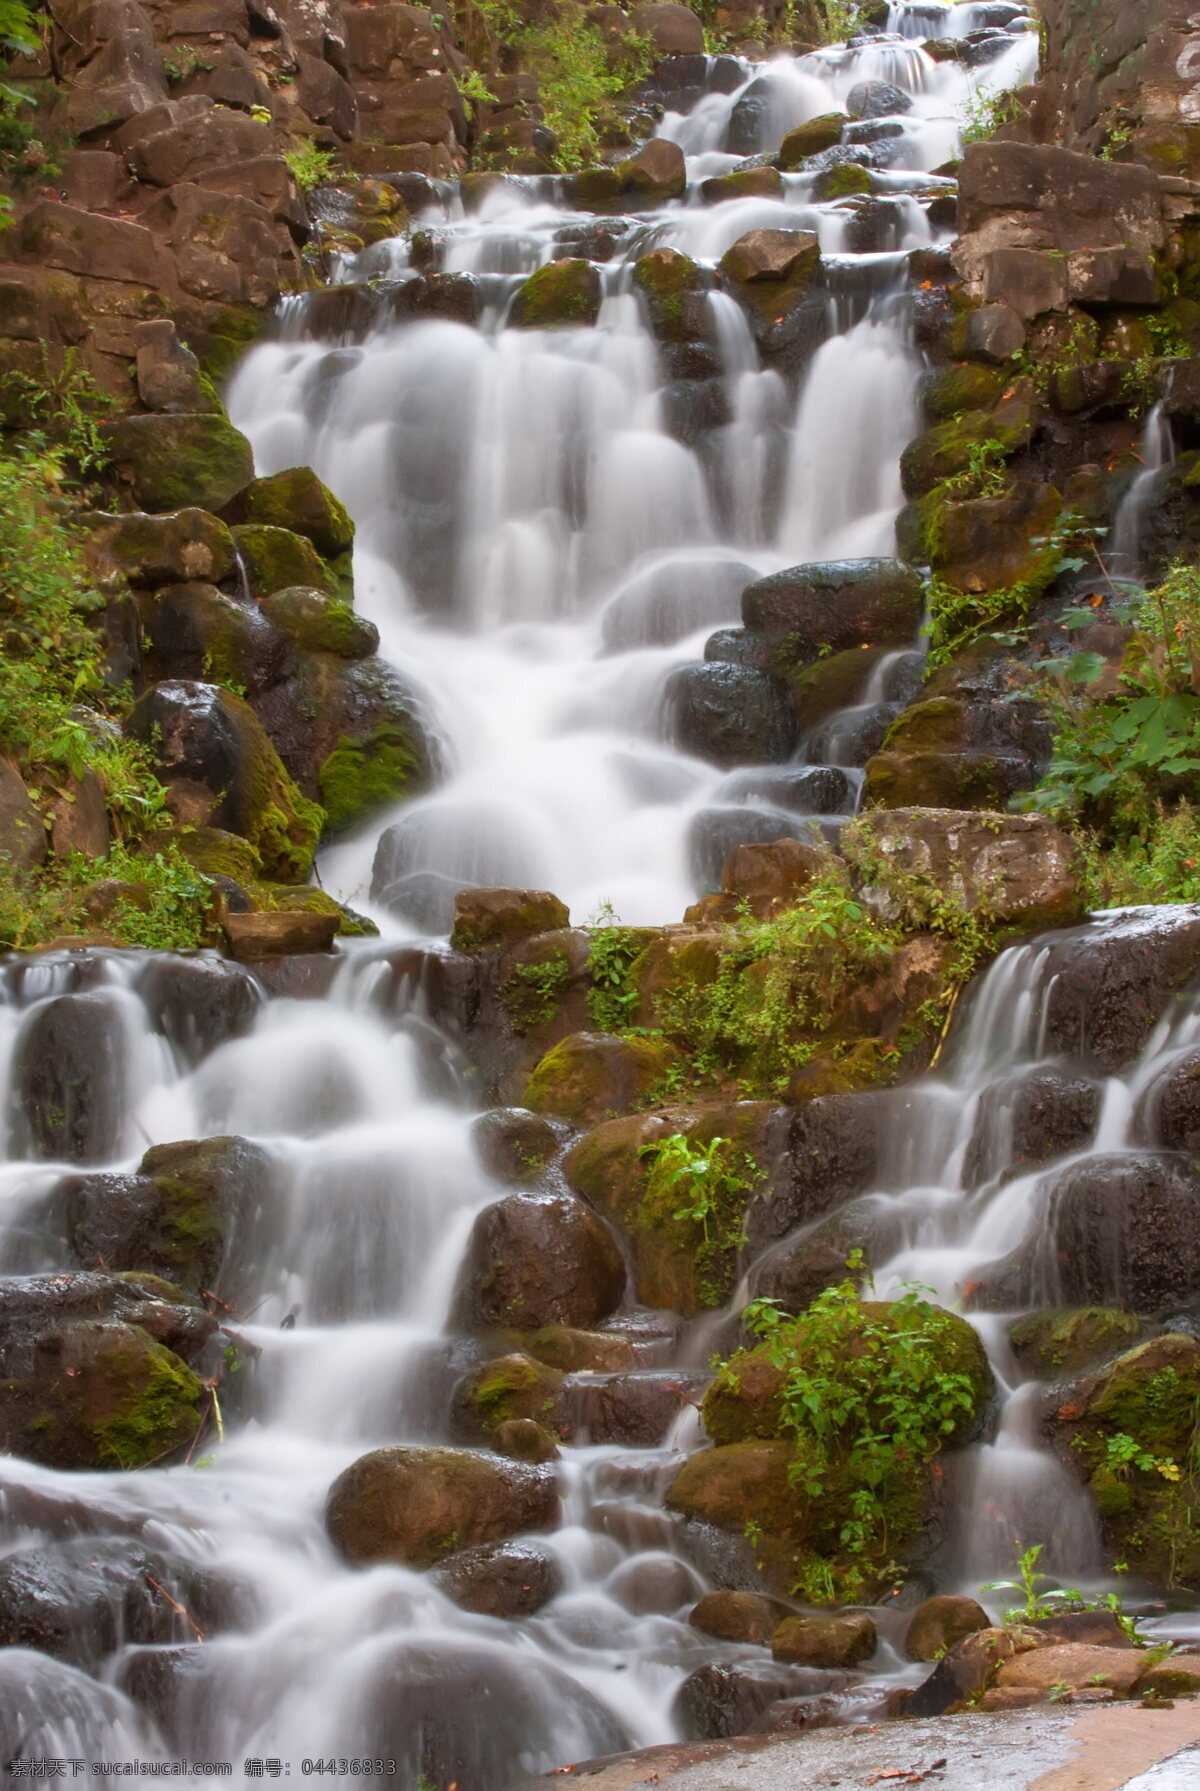 山涧瀑布 山间 山涧 瀑布 流水 岩石 重叠 山水风景 自然景观